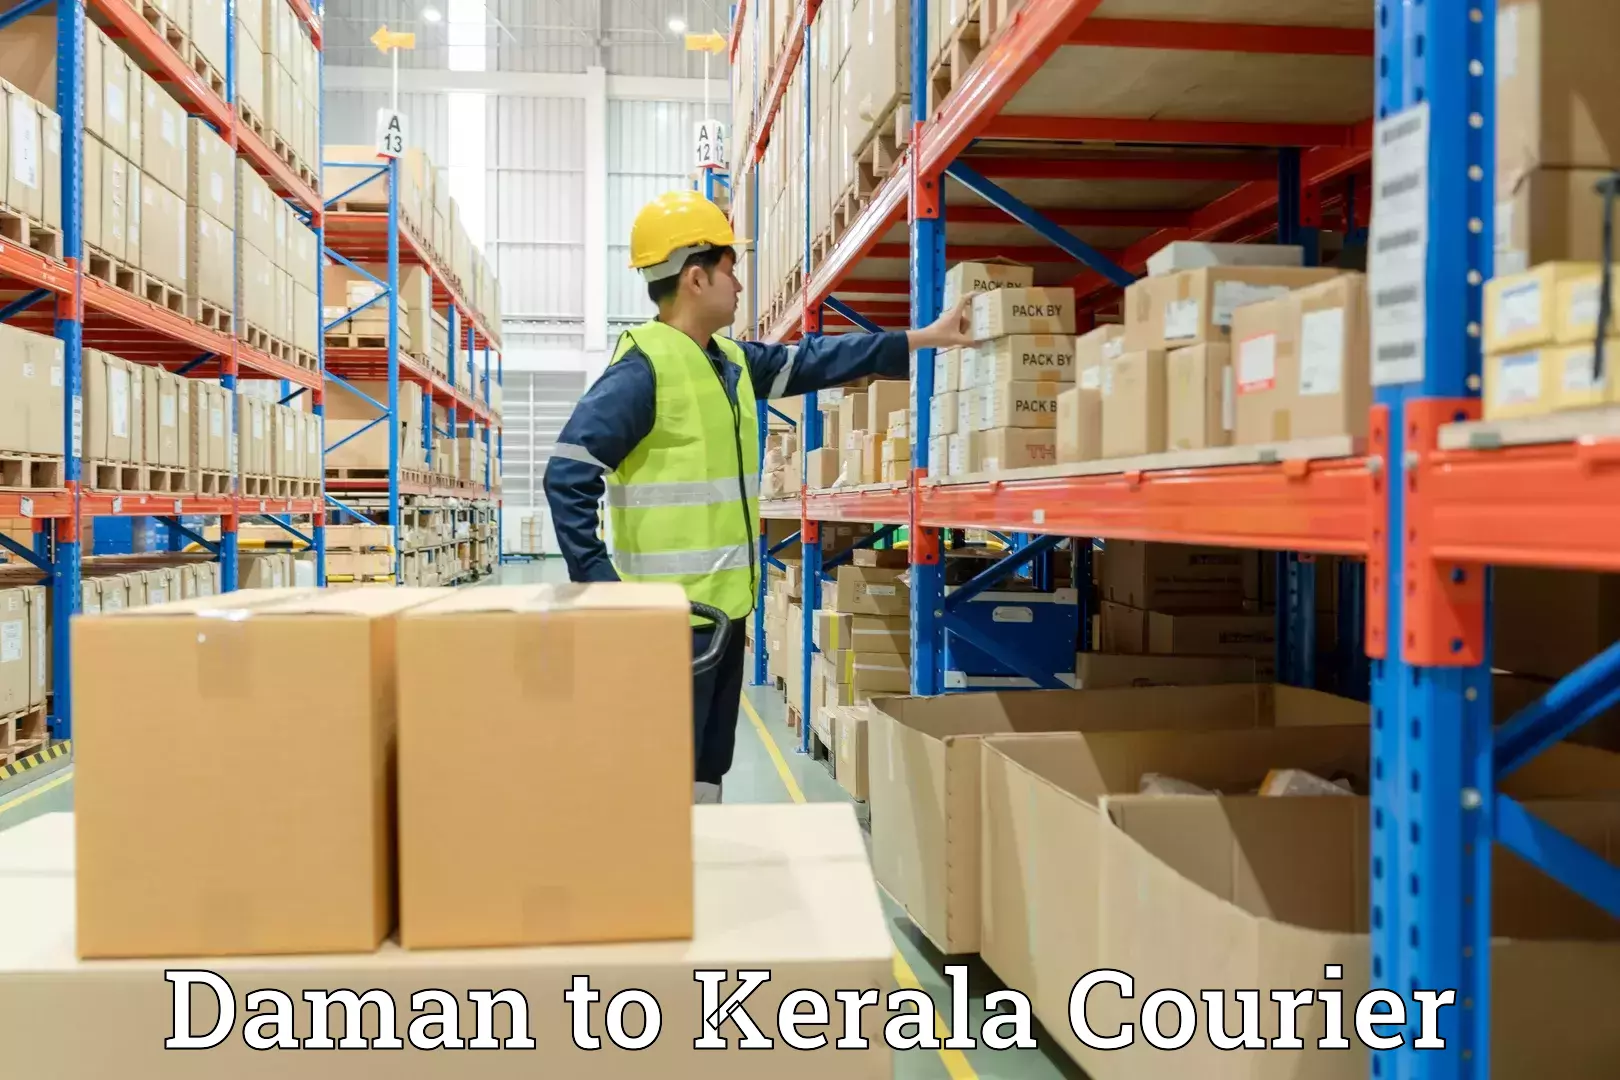 Furniture moving experts Daman to Kerala